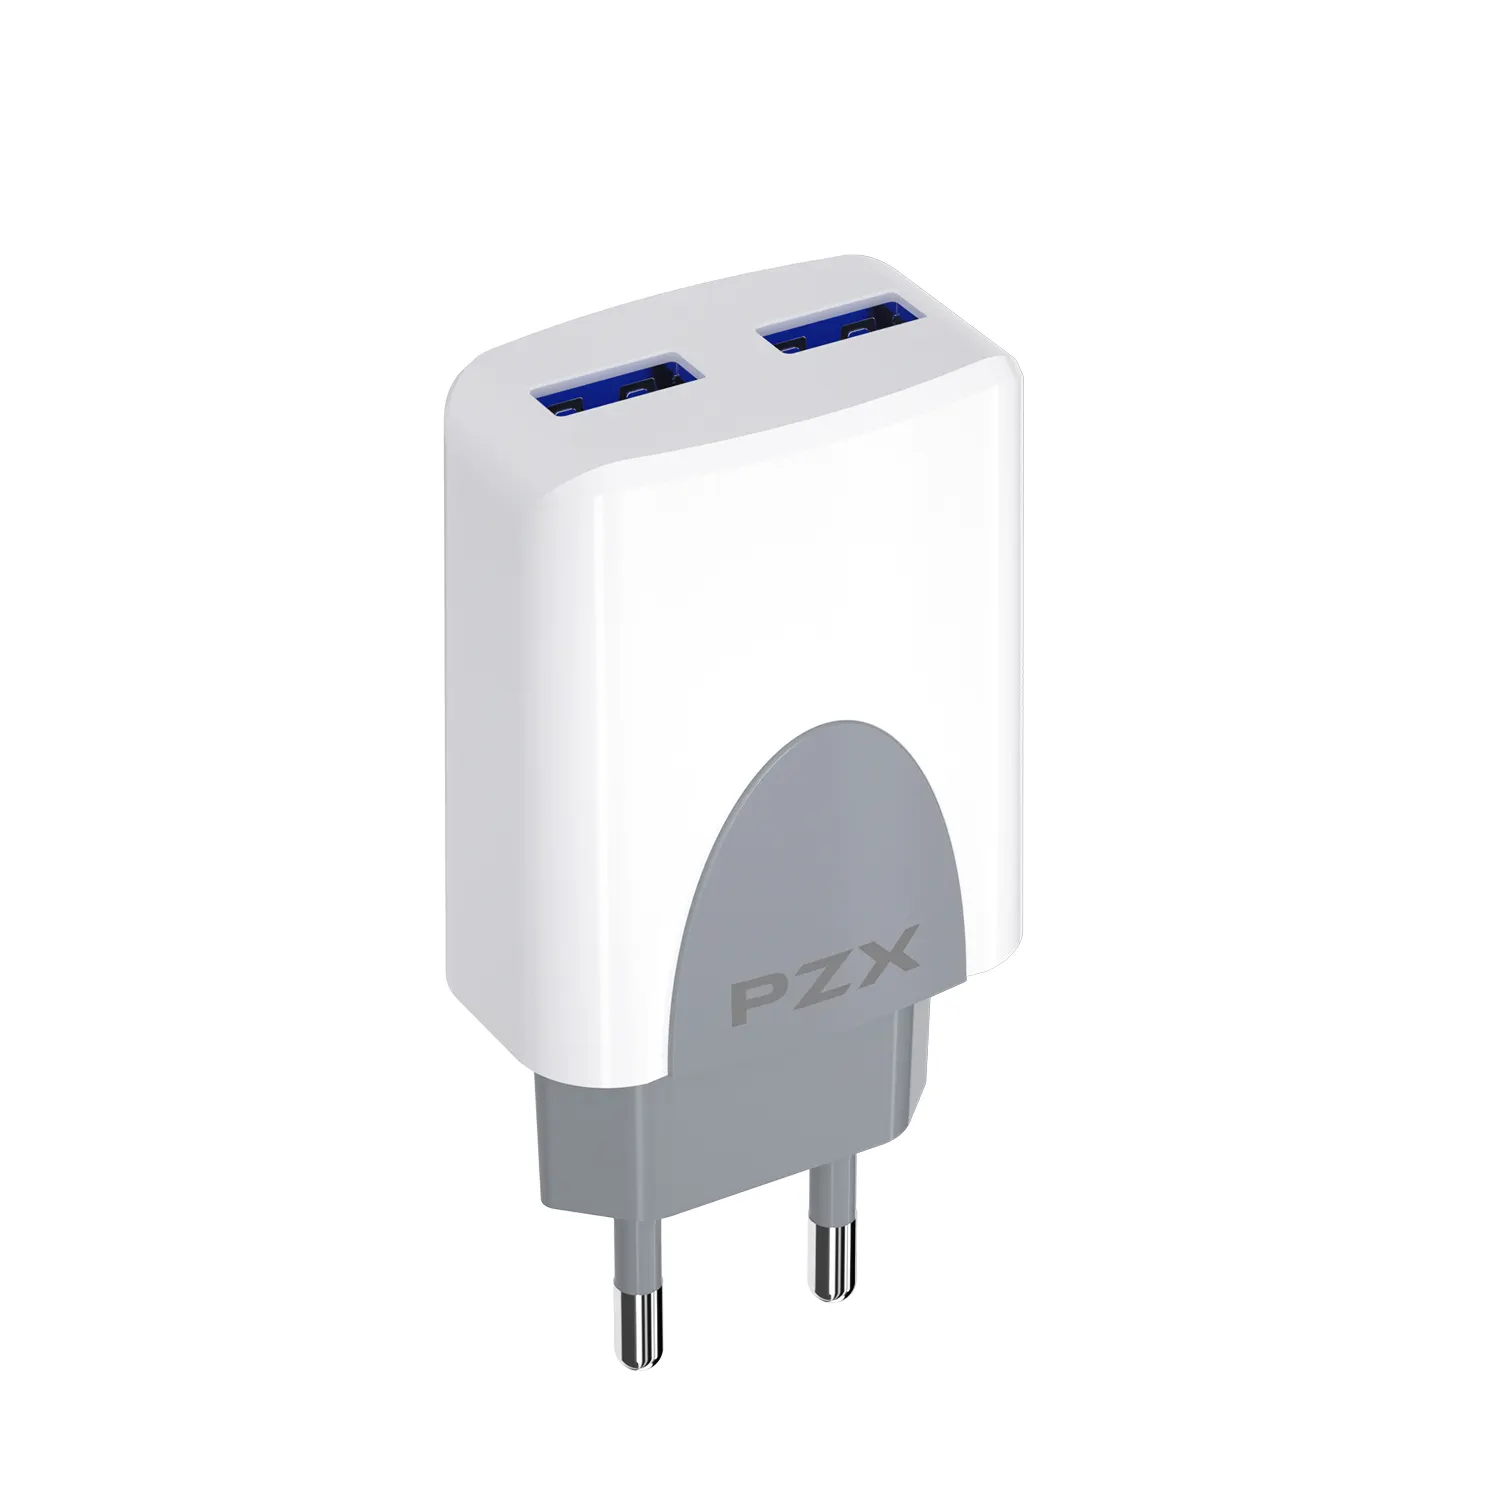 PZX P25 신제품 저렴한 범용 3.1A 빠른 충전 2 USB 포트 EU 빠른 충전기 휴대 전화 액세서리 빠른 벽 충전기